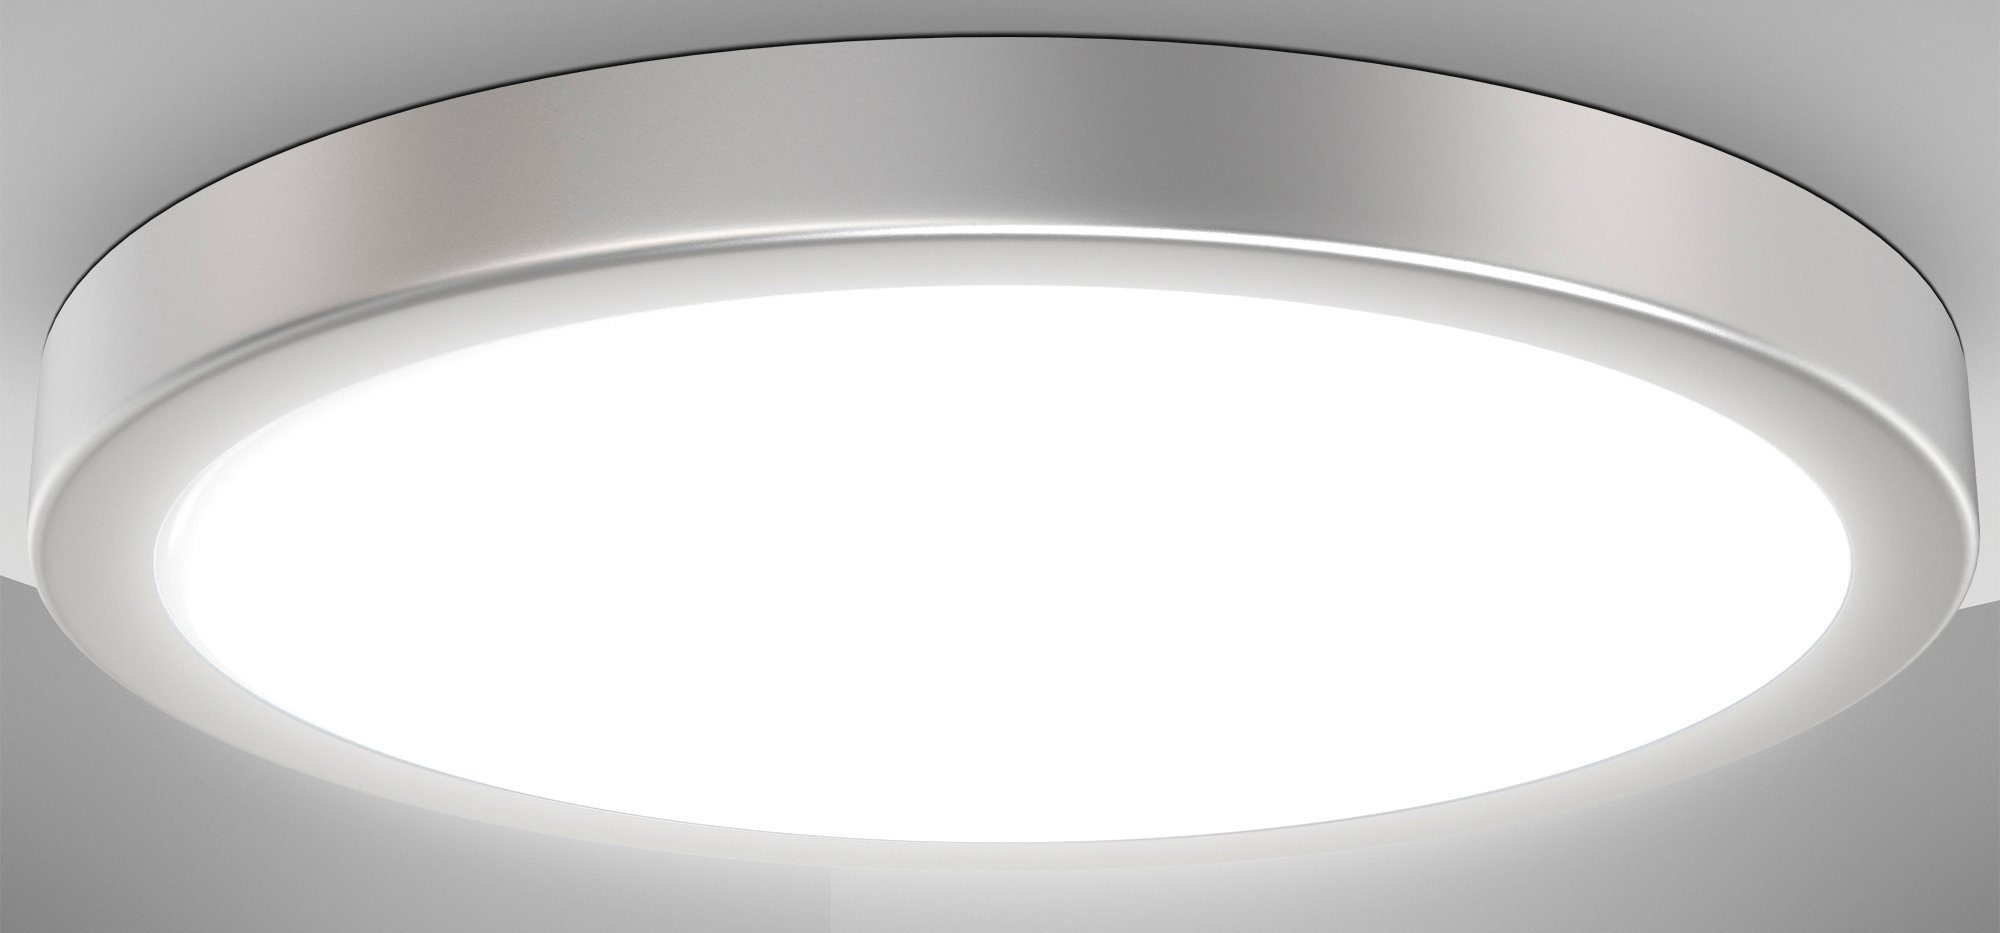 B.K.Licht LED Deckenleuchte BK_DL1537 LED Deckenlampe, Ø38cm, Neutralweißes  Licht, Silberfarbig, LED fest integriert, Neutralweiß, 24W, 4.000K, 3.000Lm,  Küchenlampe